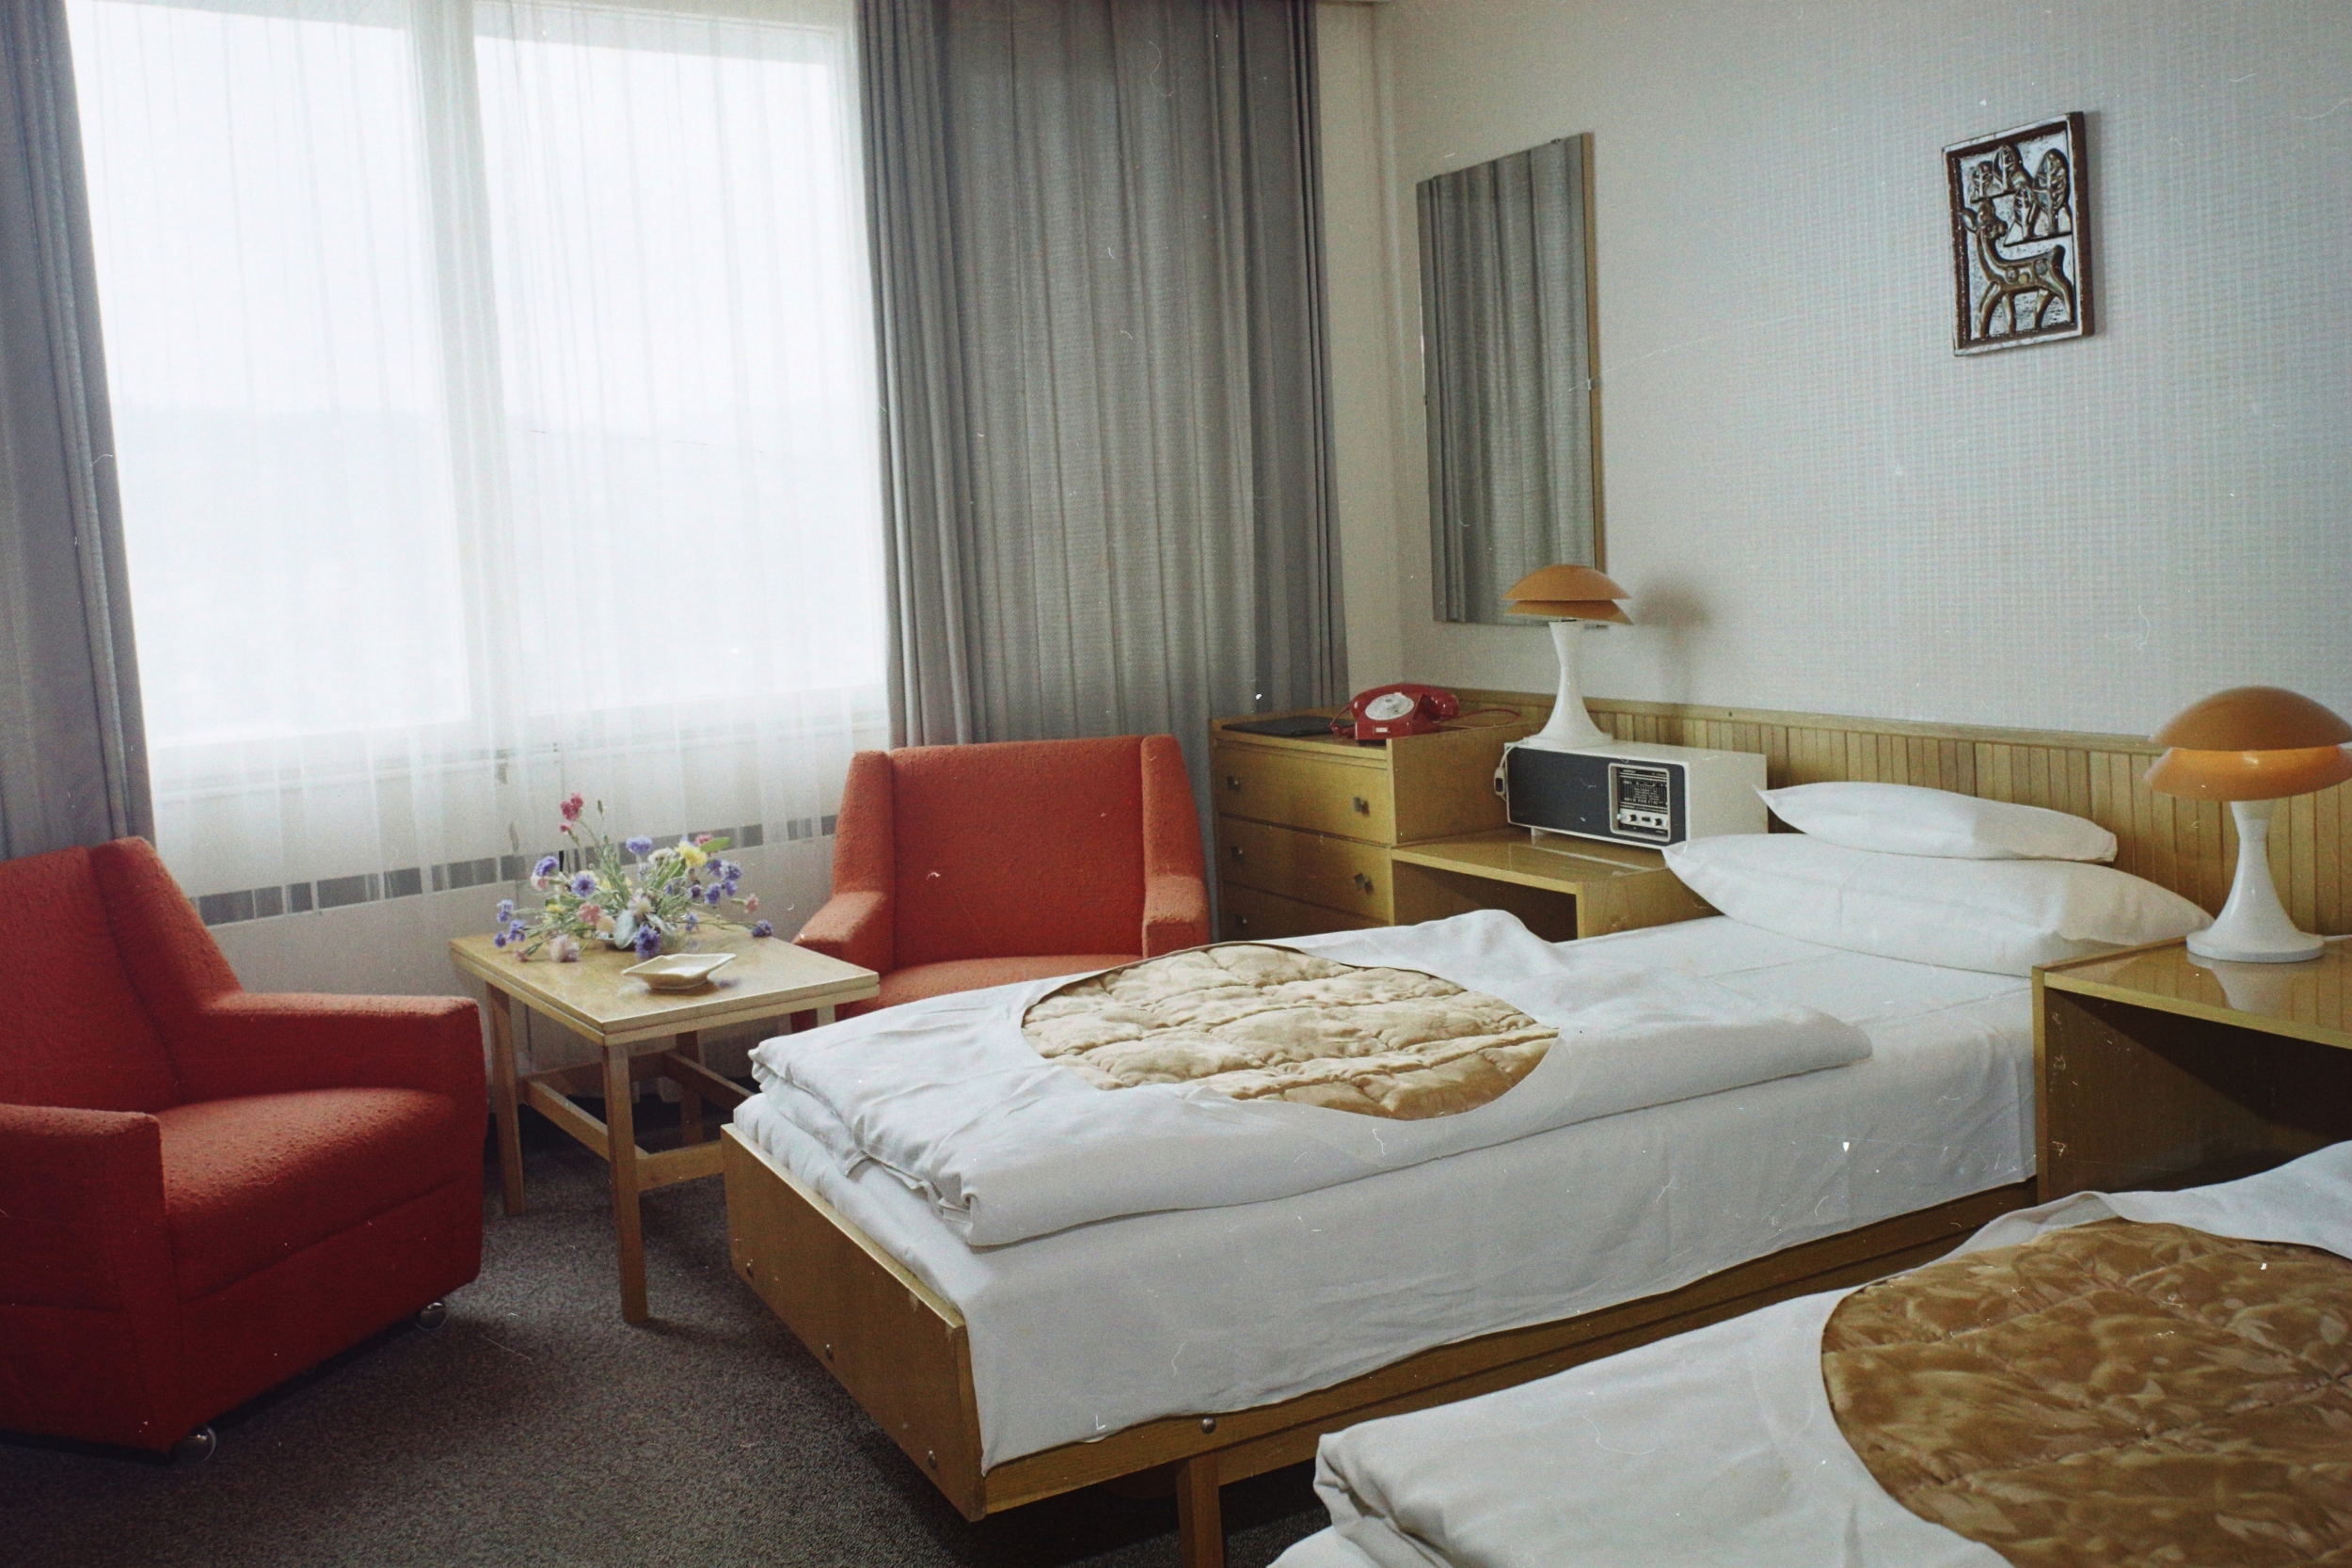 Szilágyi Erzsébet fasor, a Budapest körszálló egyik szobája, 1975. Forrás: Fortepan / Bauer Sándor